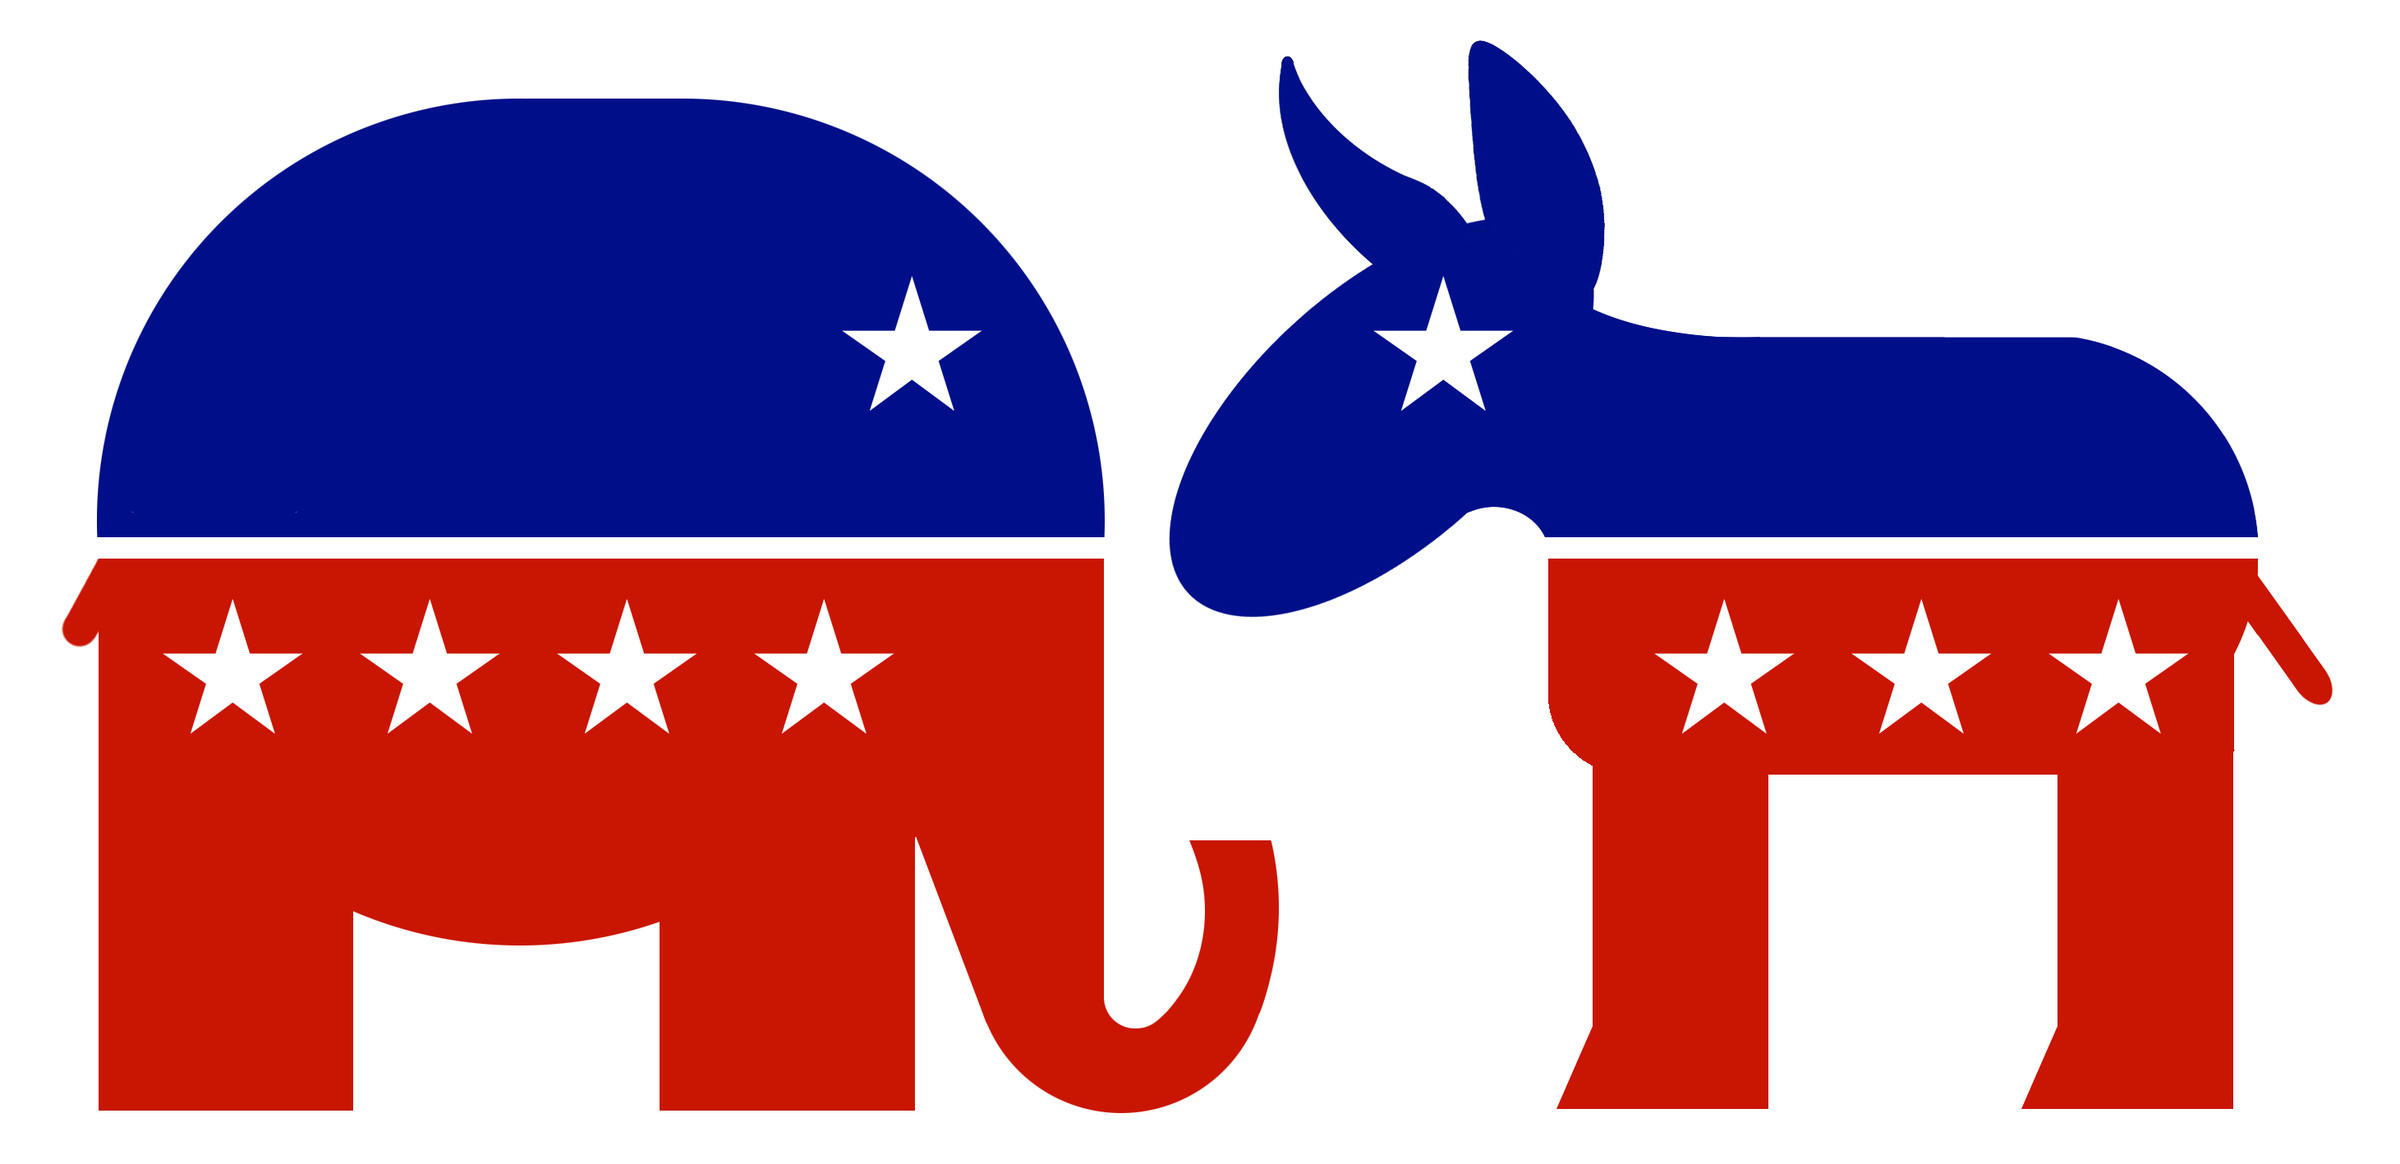 Democrat party vs republican party